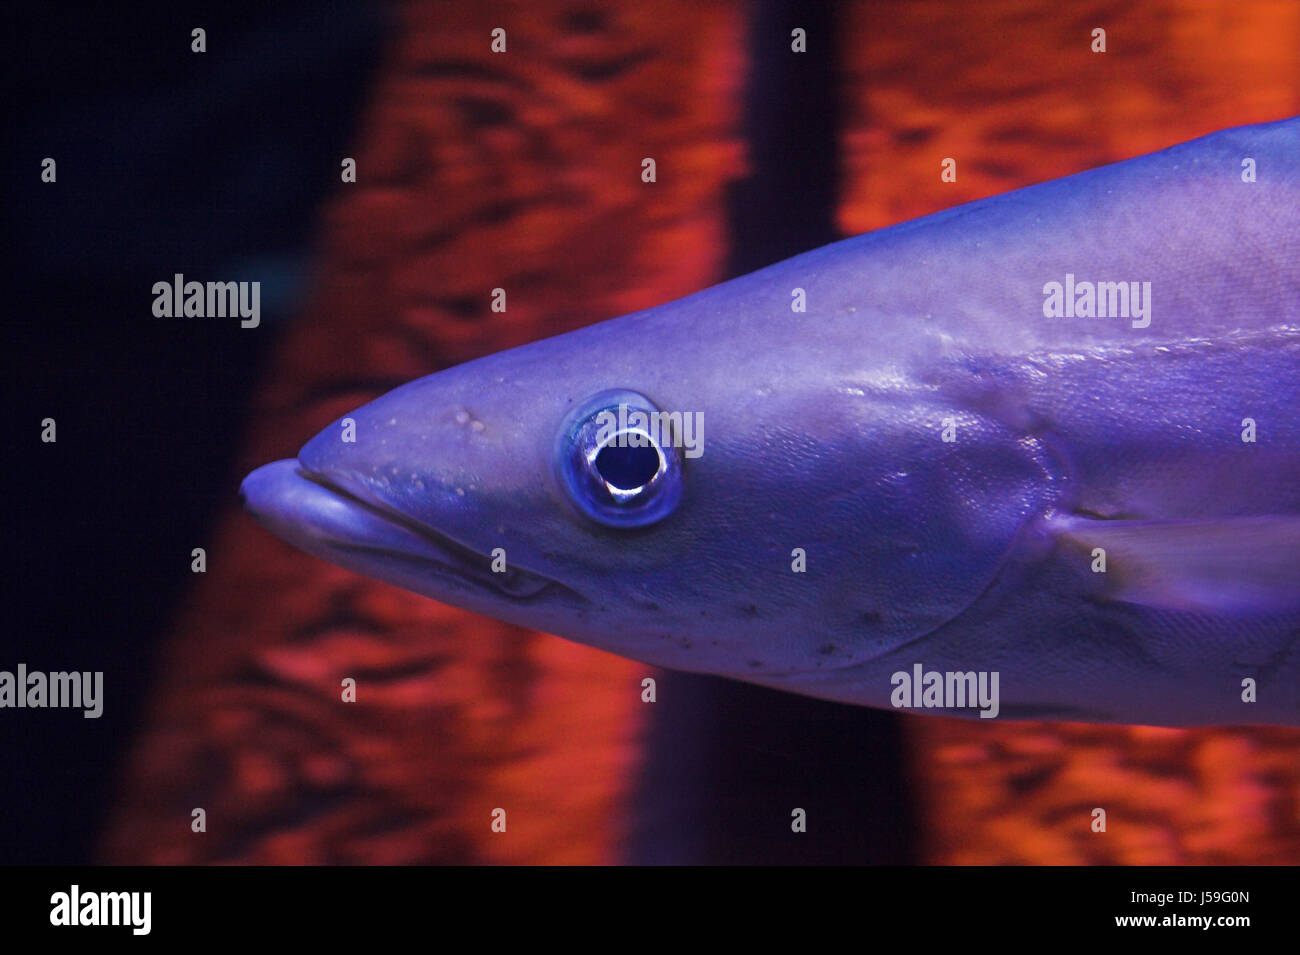 mouth portrait aquarium fish eye organ fins gills fin meerwasserfisch Stock Photo